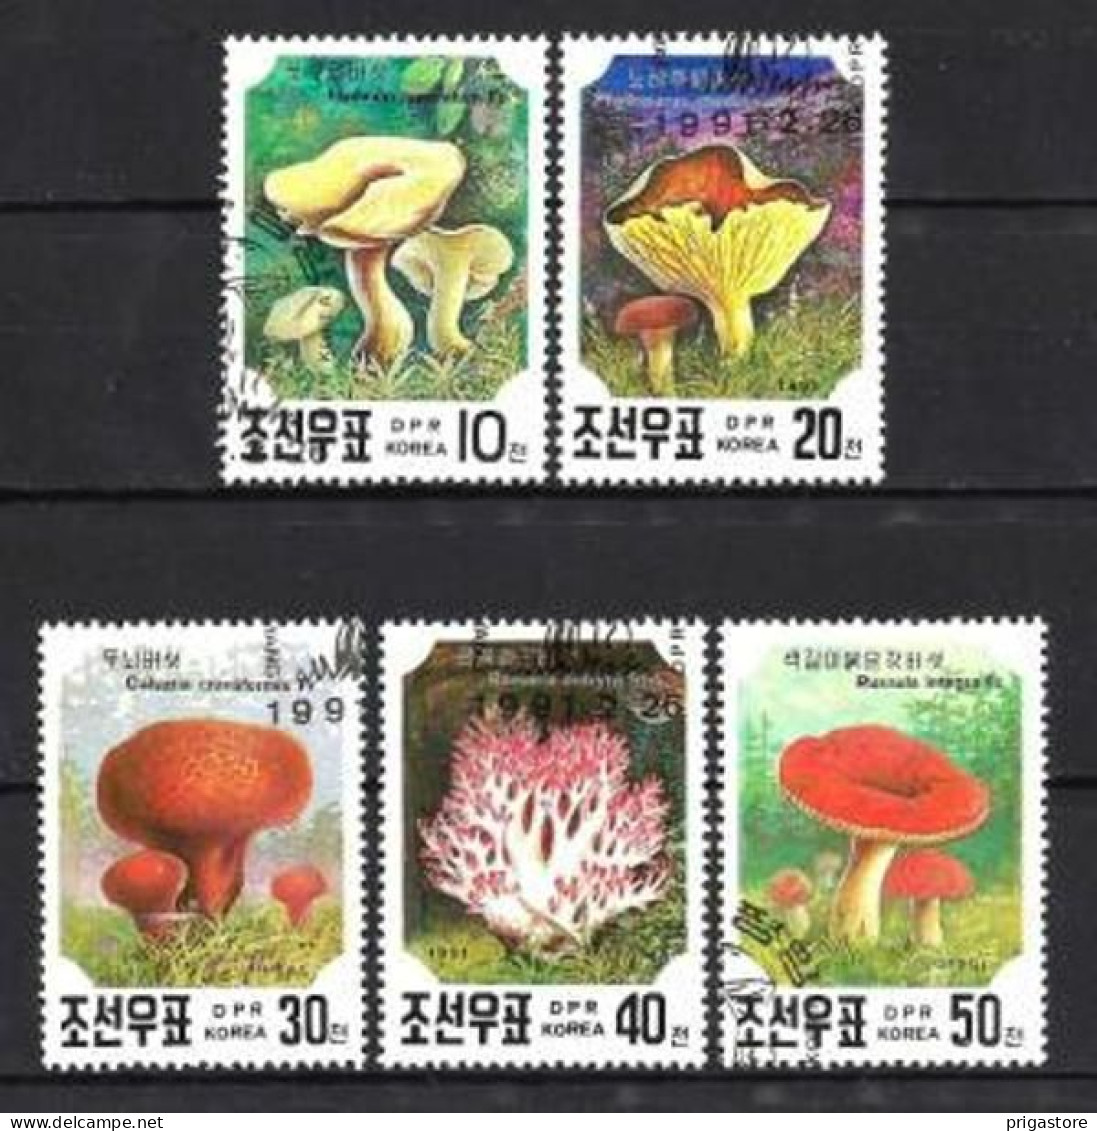 Champignons Corée Du Nord 1991 (33) Yvert N° 2217 à 2221 Oblitérés Used - Champignons